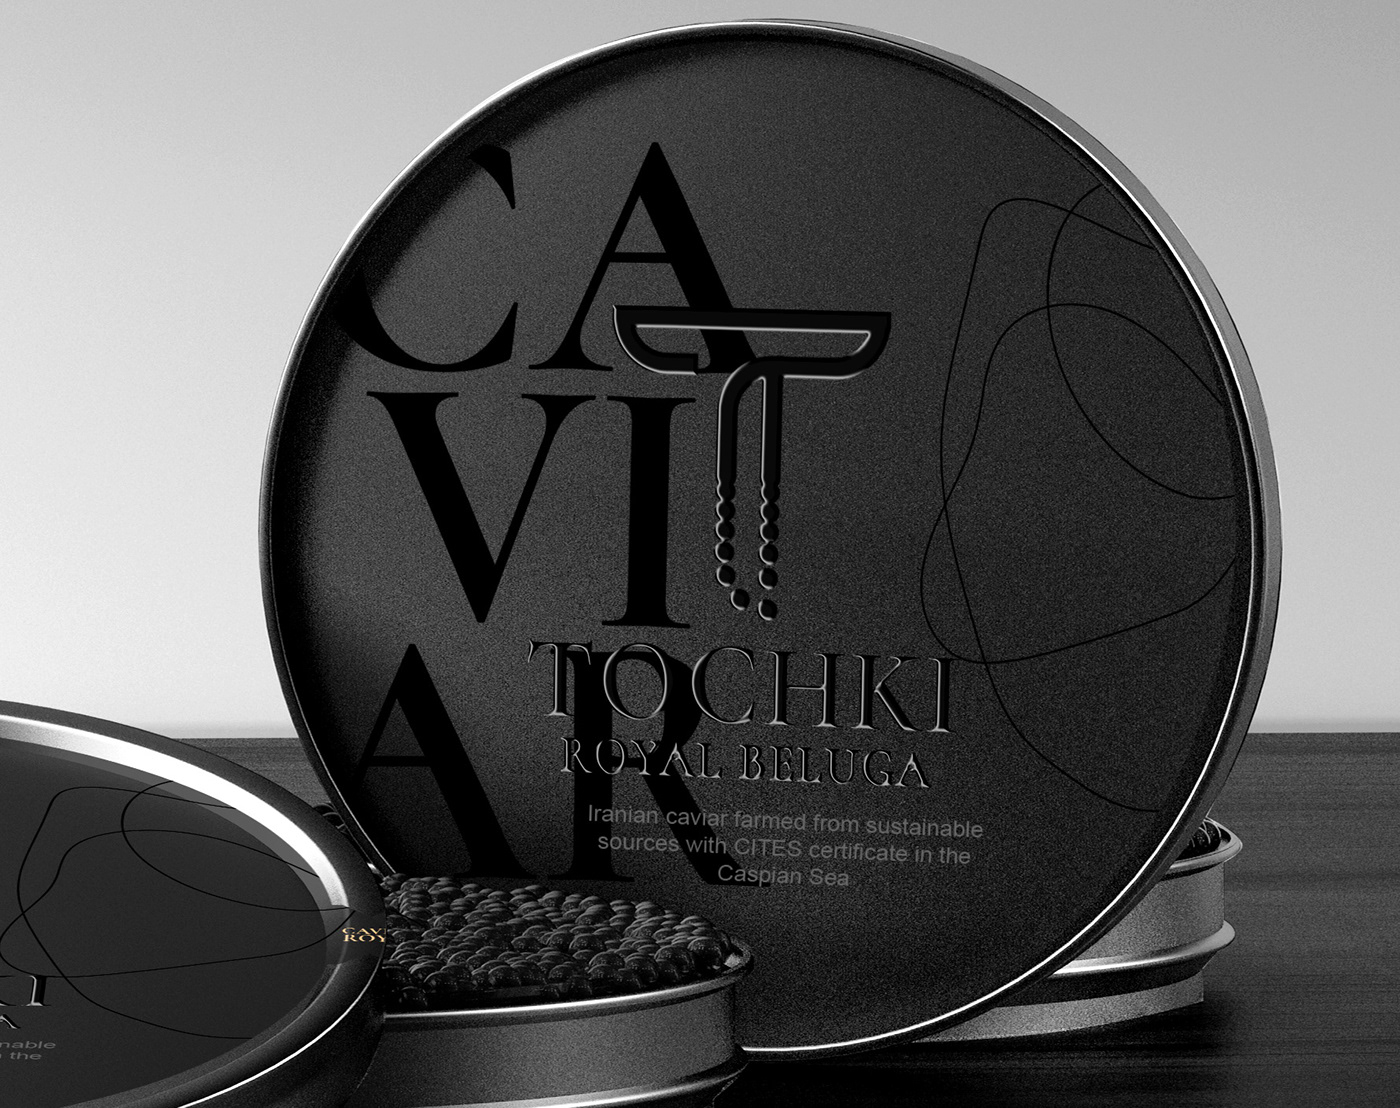 caviar caviar can caviar creative design caviar label caviar tin.